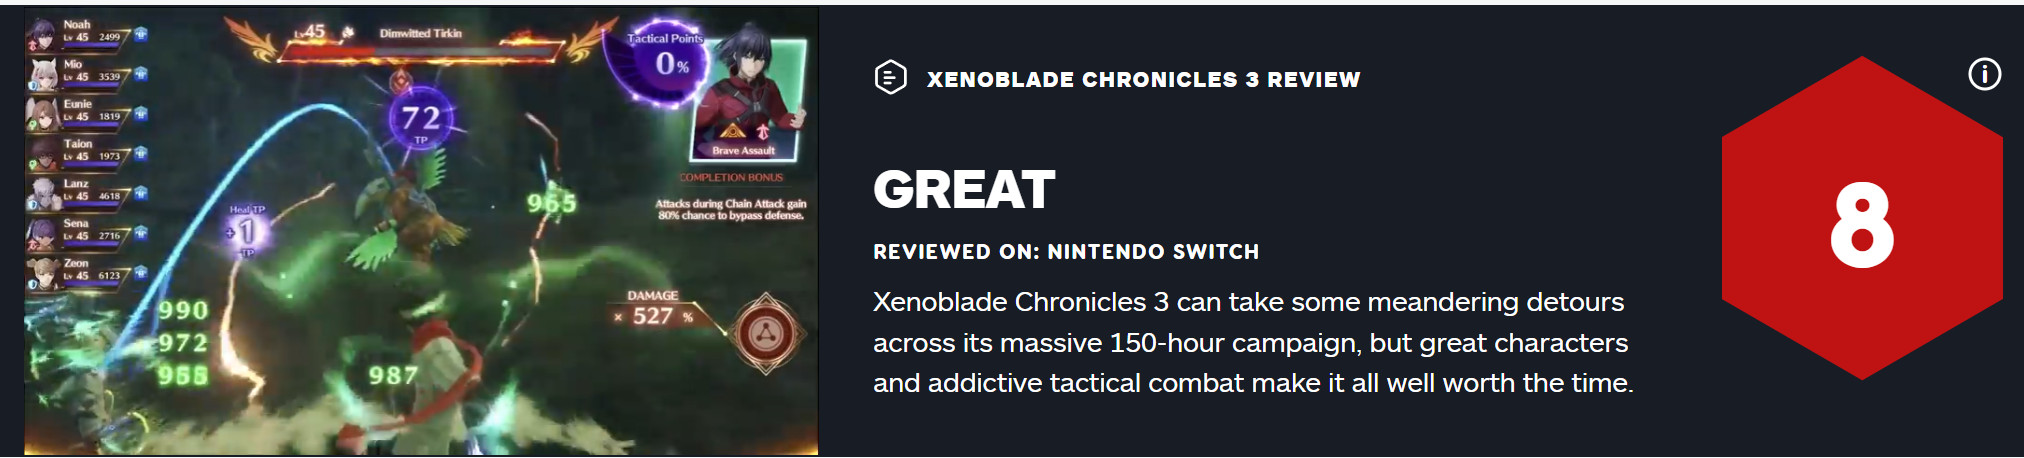 《异度神剑3》获IGN8分评价 拥有出色的角色及战术系统